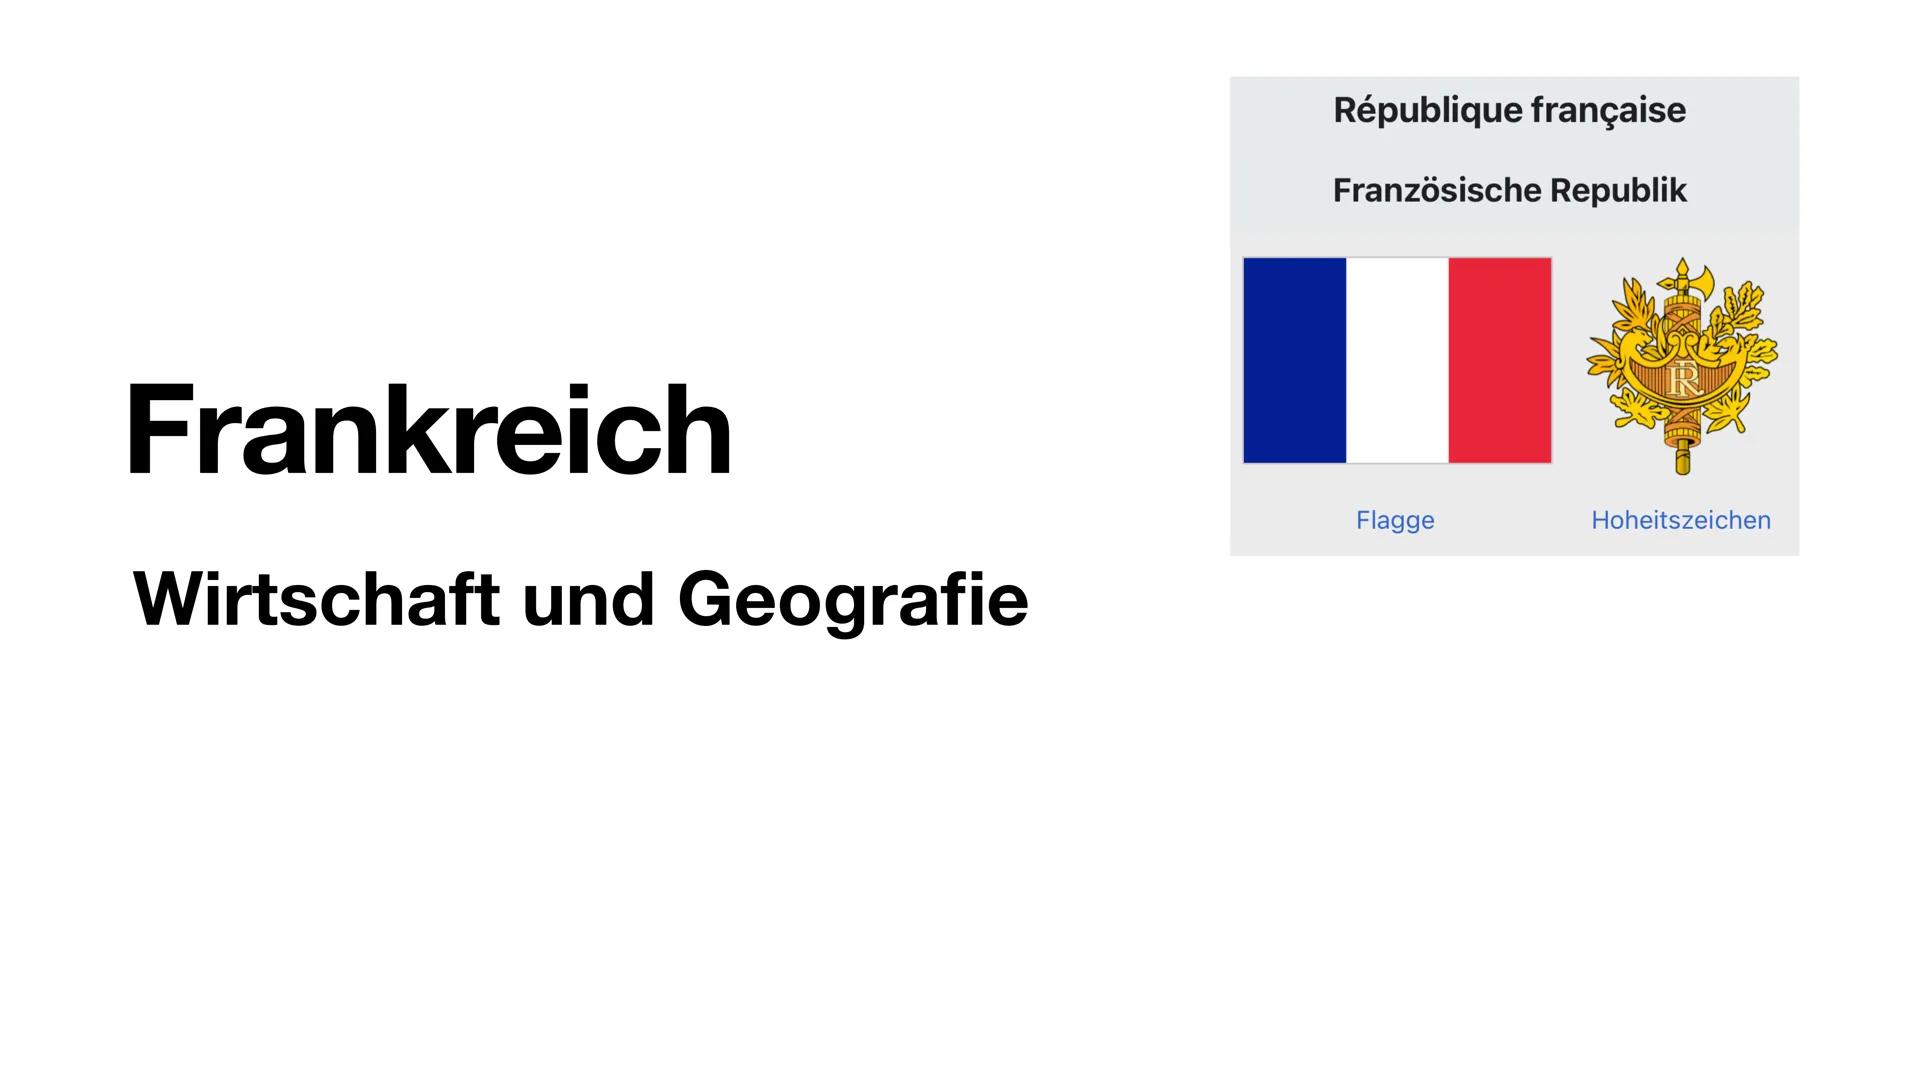 Frankreich
Wirtschaft und Geografie
République française
Französische Republik
Flagge
Hoheitszeichen Frankreich
Wirtschaft und Geografie
Rép